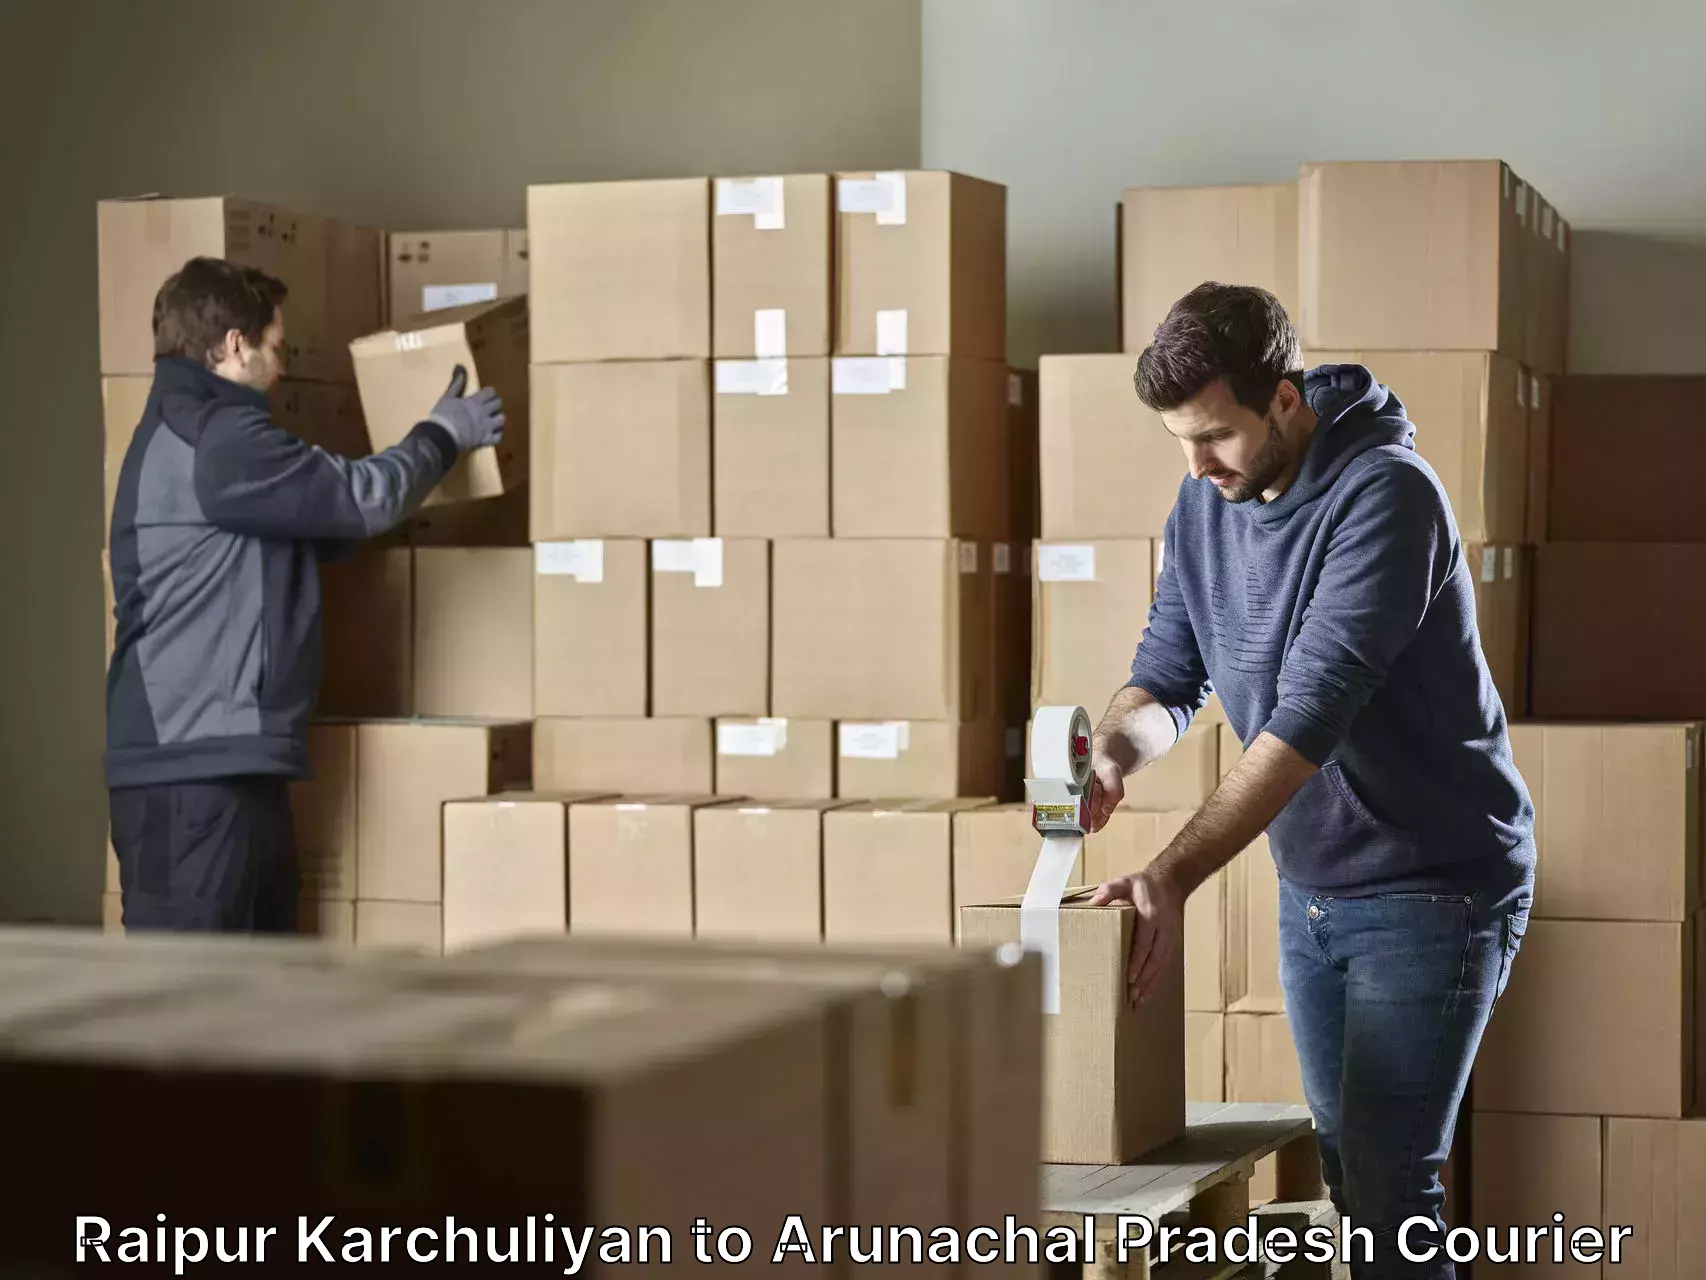 Professional furniture transport Raipur Karchuliyan to Arunachal Pradesh